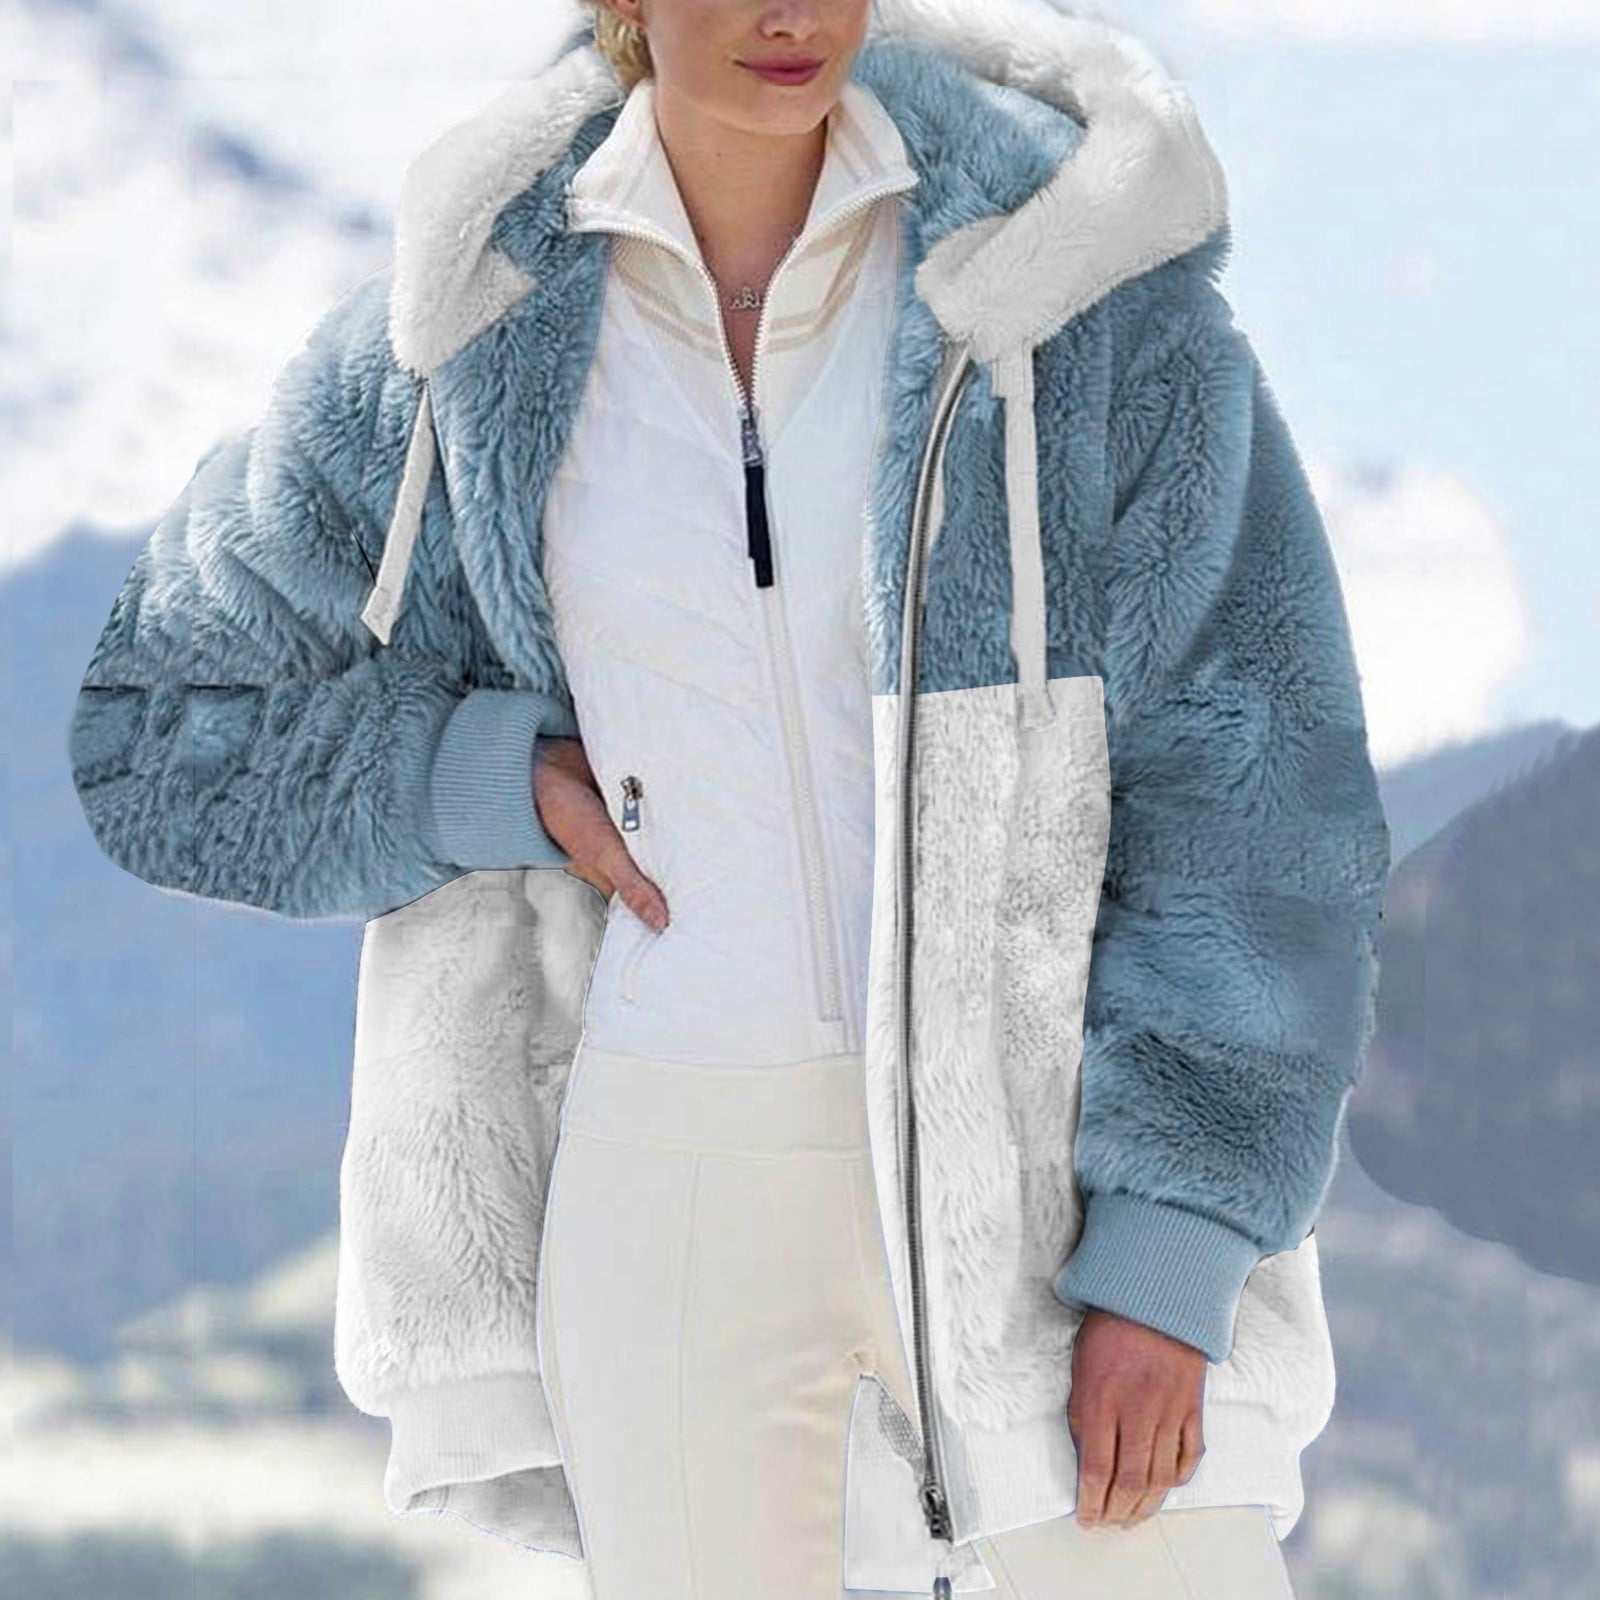 New Winter Women's Jacket Hooded Warm Plush Loose Jacket for Women